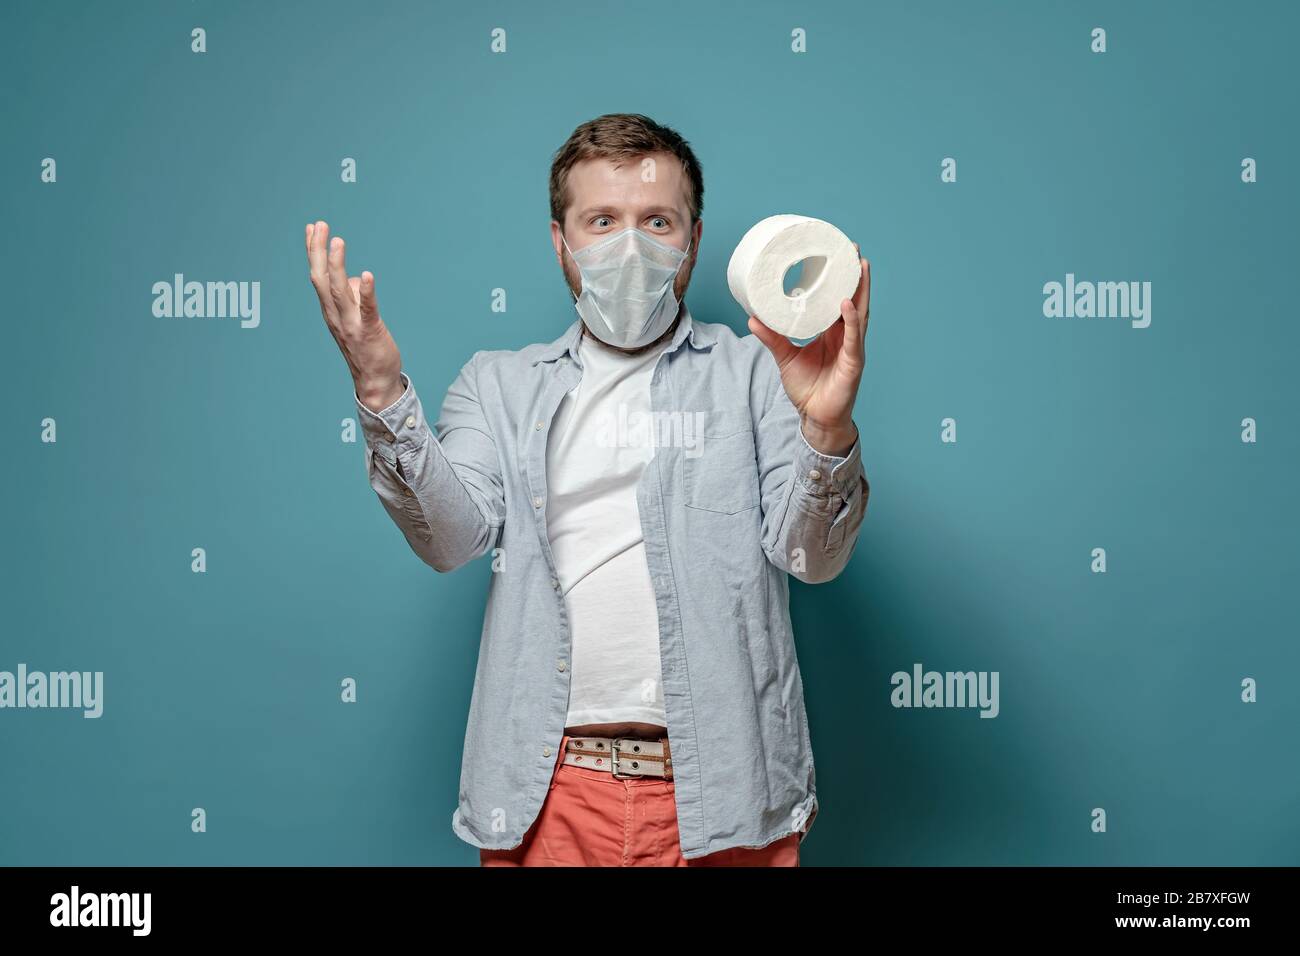 Der Mann in einer medizinischen Maske ist glücklich, er kaufte toilettenpapier während eines Gütermangels, der mit der Epidemie des Virus zusammenhängt. Paranoia. Stockfoto